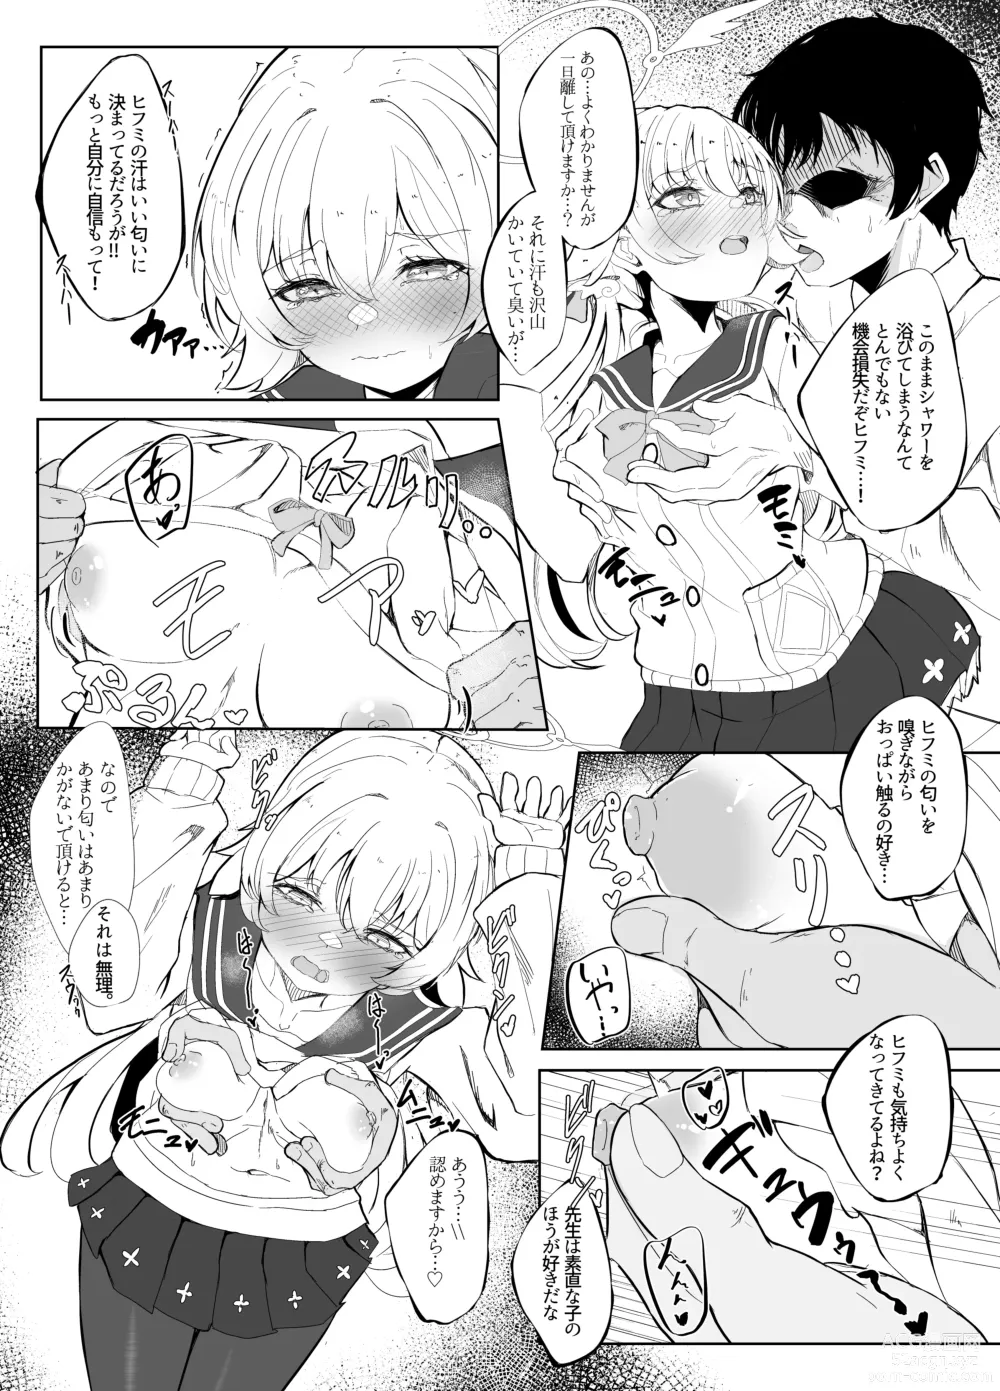 Page 6 of doujinshi Hifumi ga Ii nioi no hon